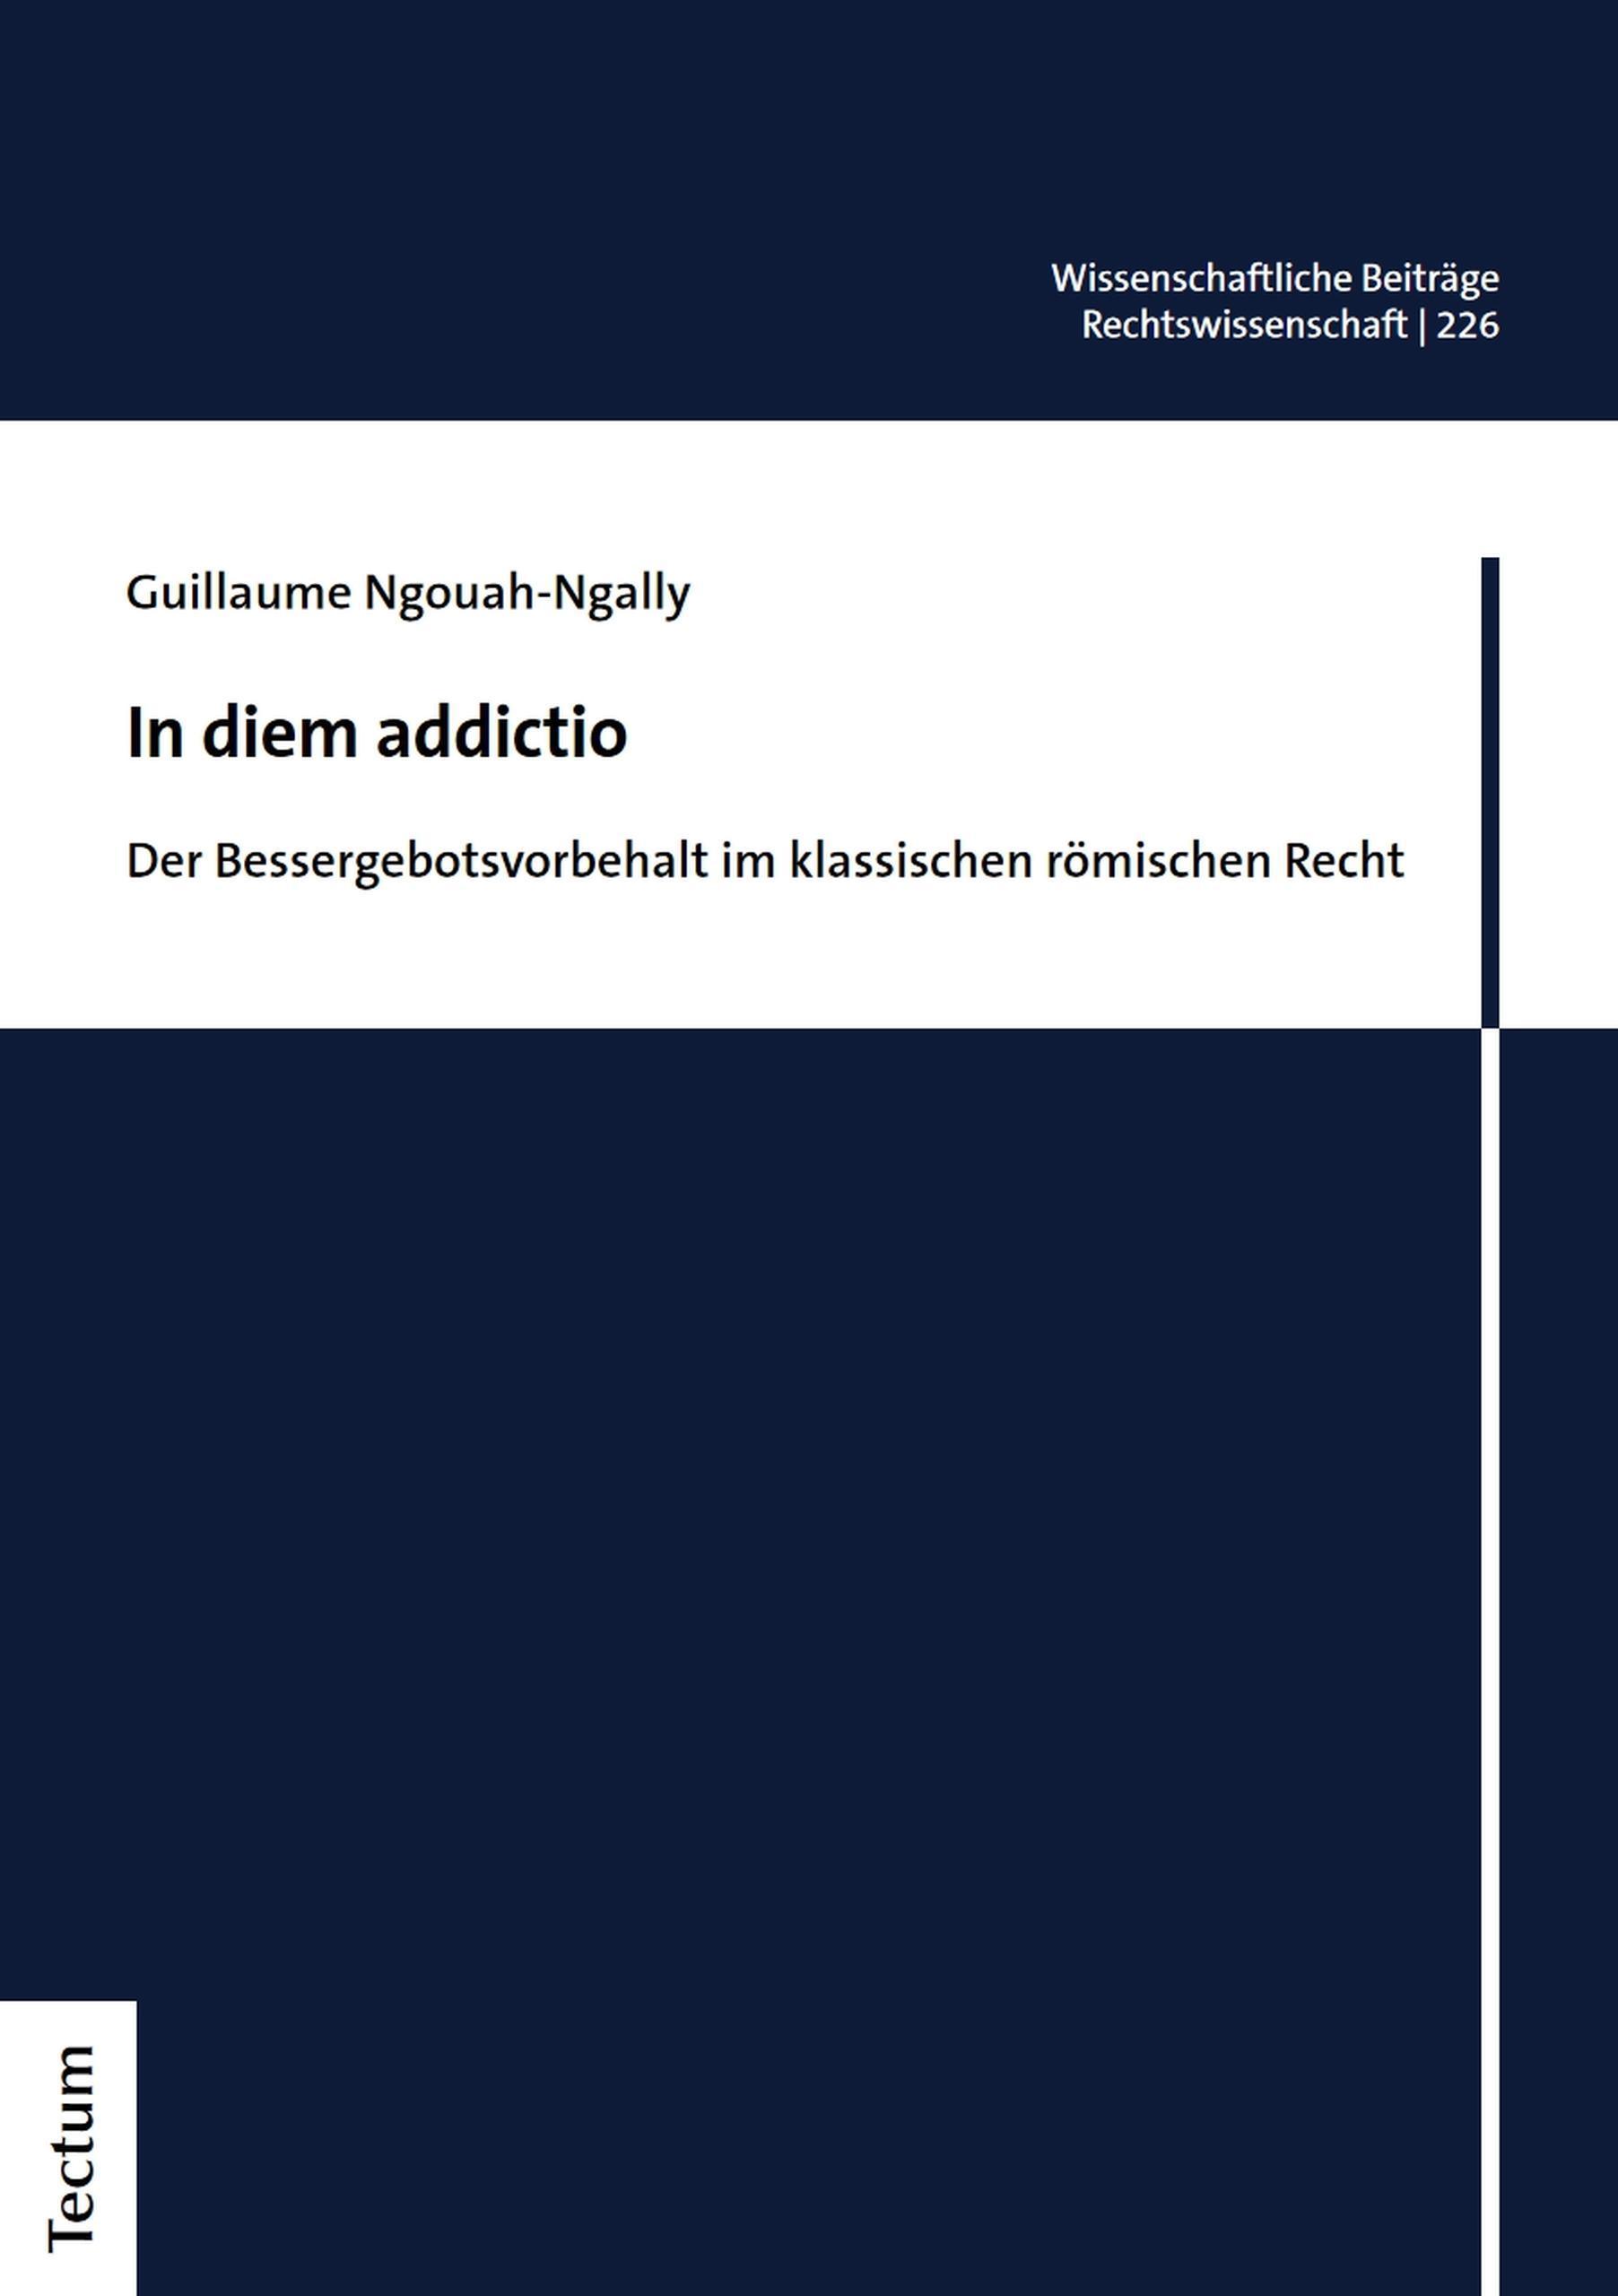 In diem addictio / Wissenschaftliche Beiträge aus dem Tectum Verlag: Rechtswissenschaften Bd.226